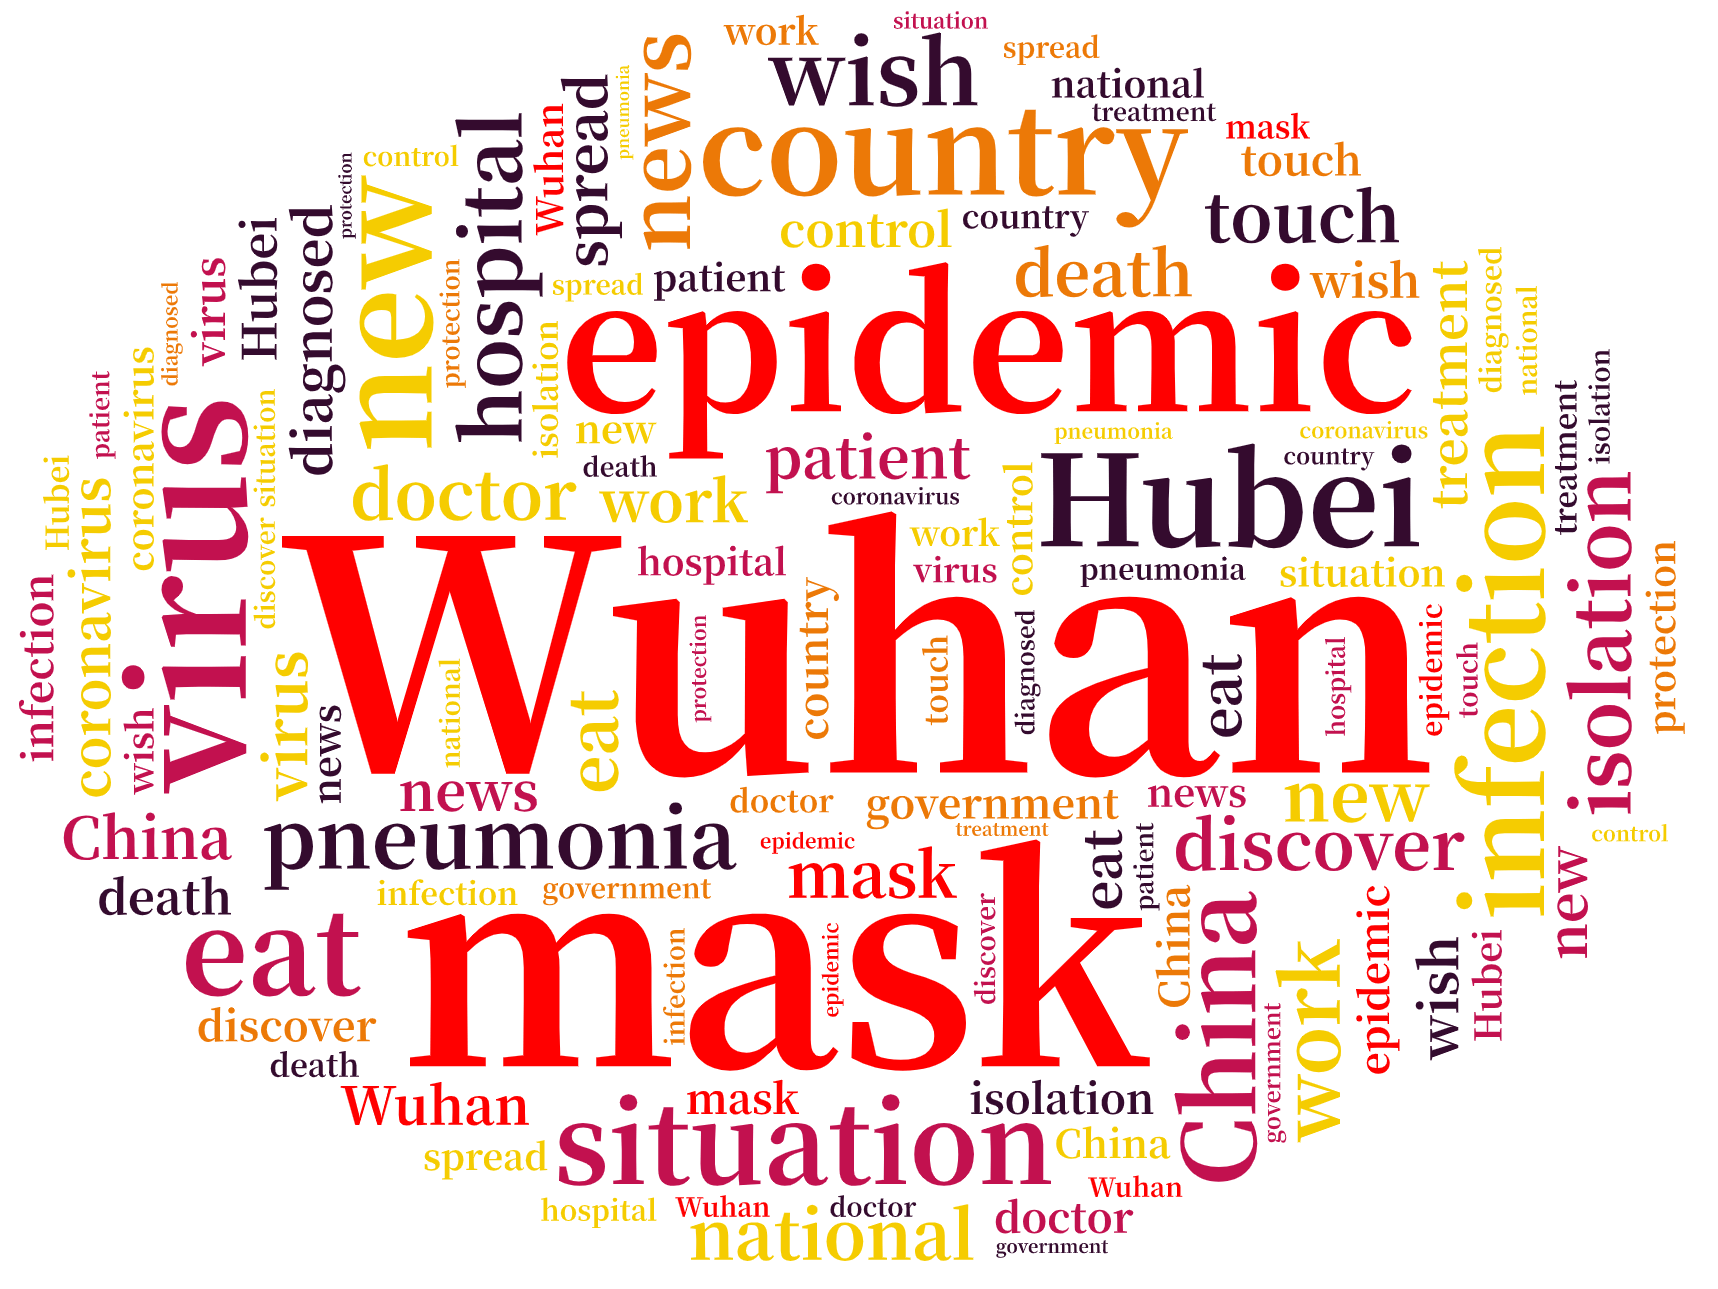 词云图,文字云图,Wuhan,epidemic,virus,infection,mask,hospital,country,isolation,China,situation